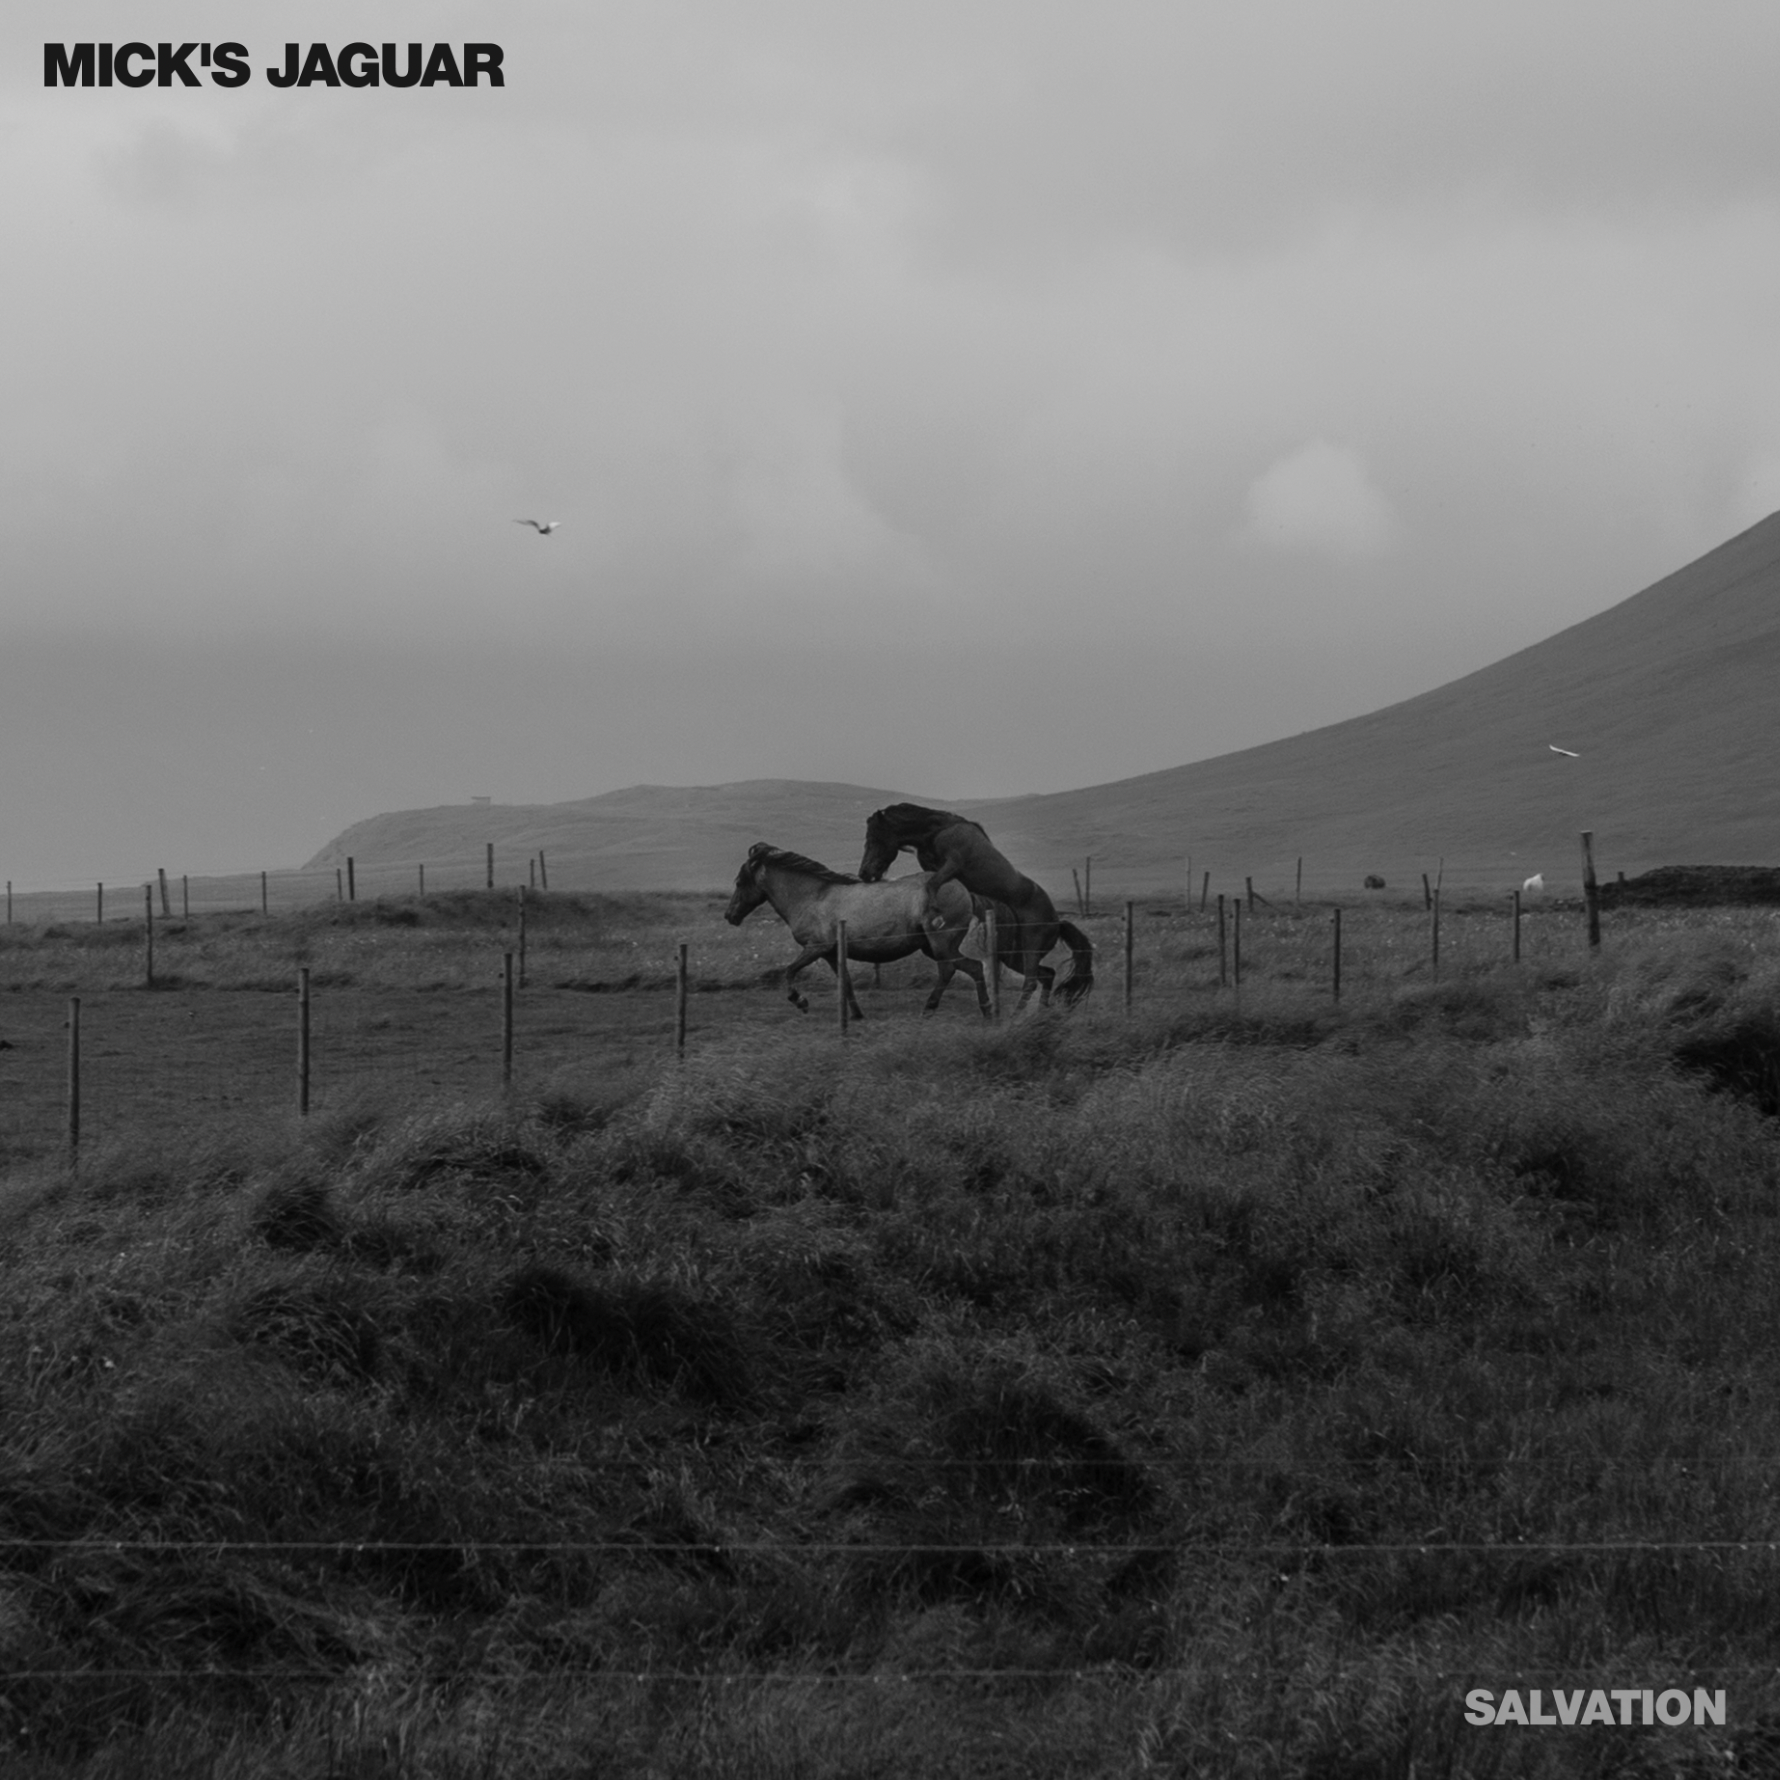 Mick’s Jaguar – Salvation